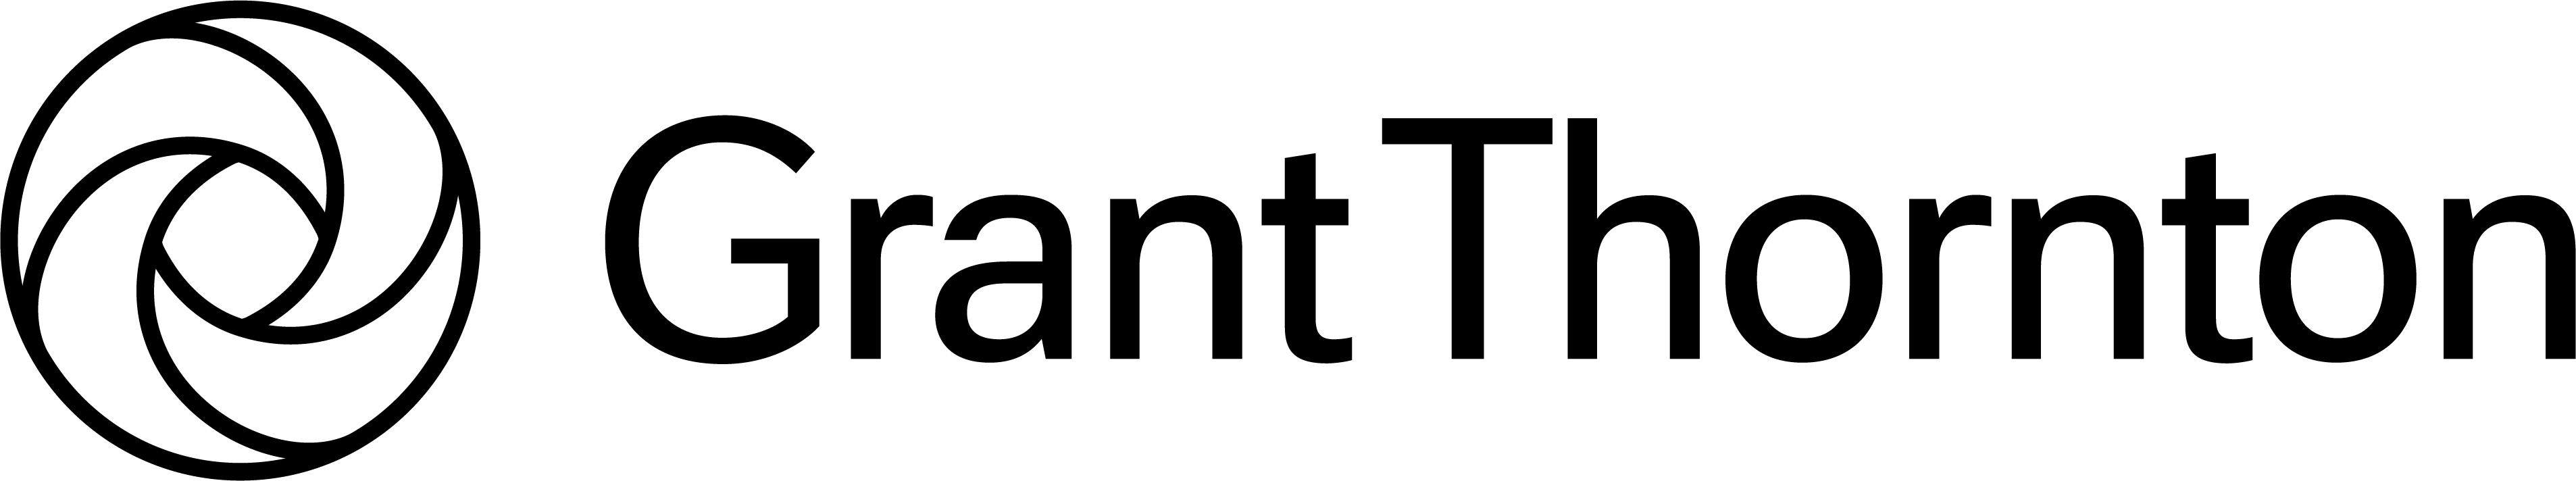 GT_logo-Outline_Black